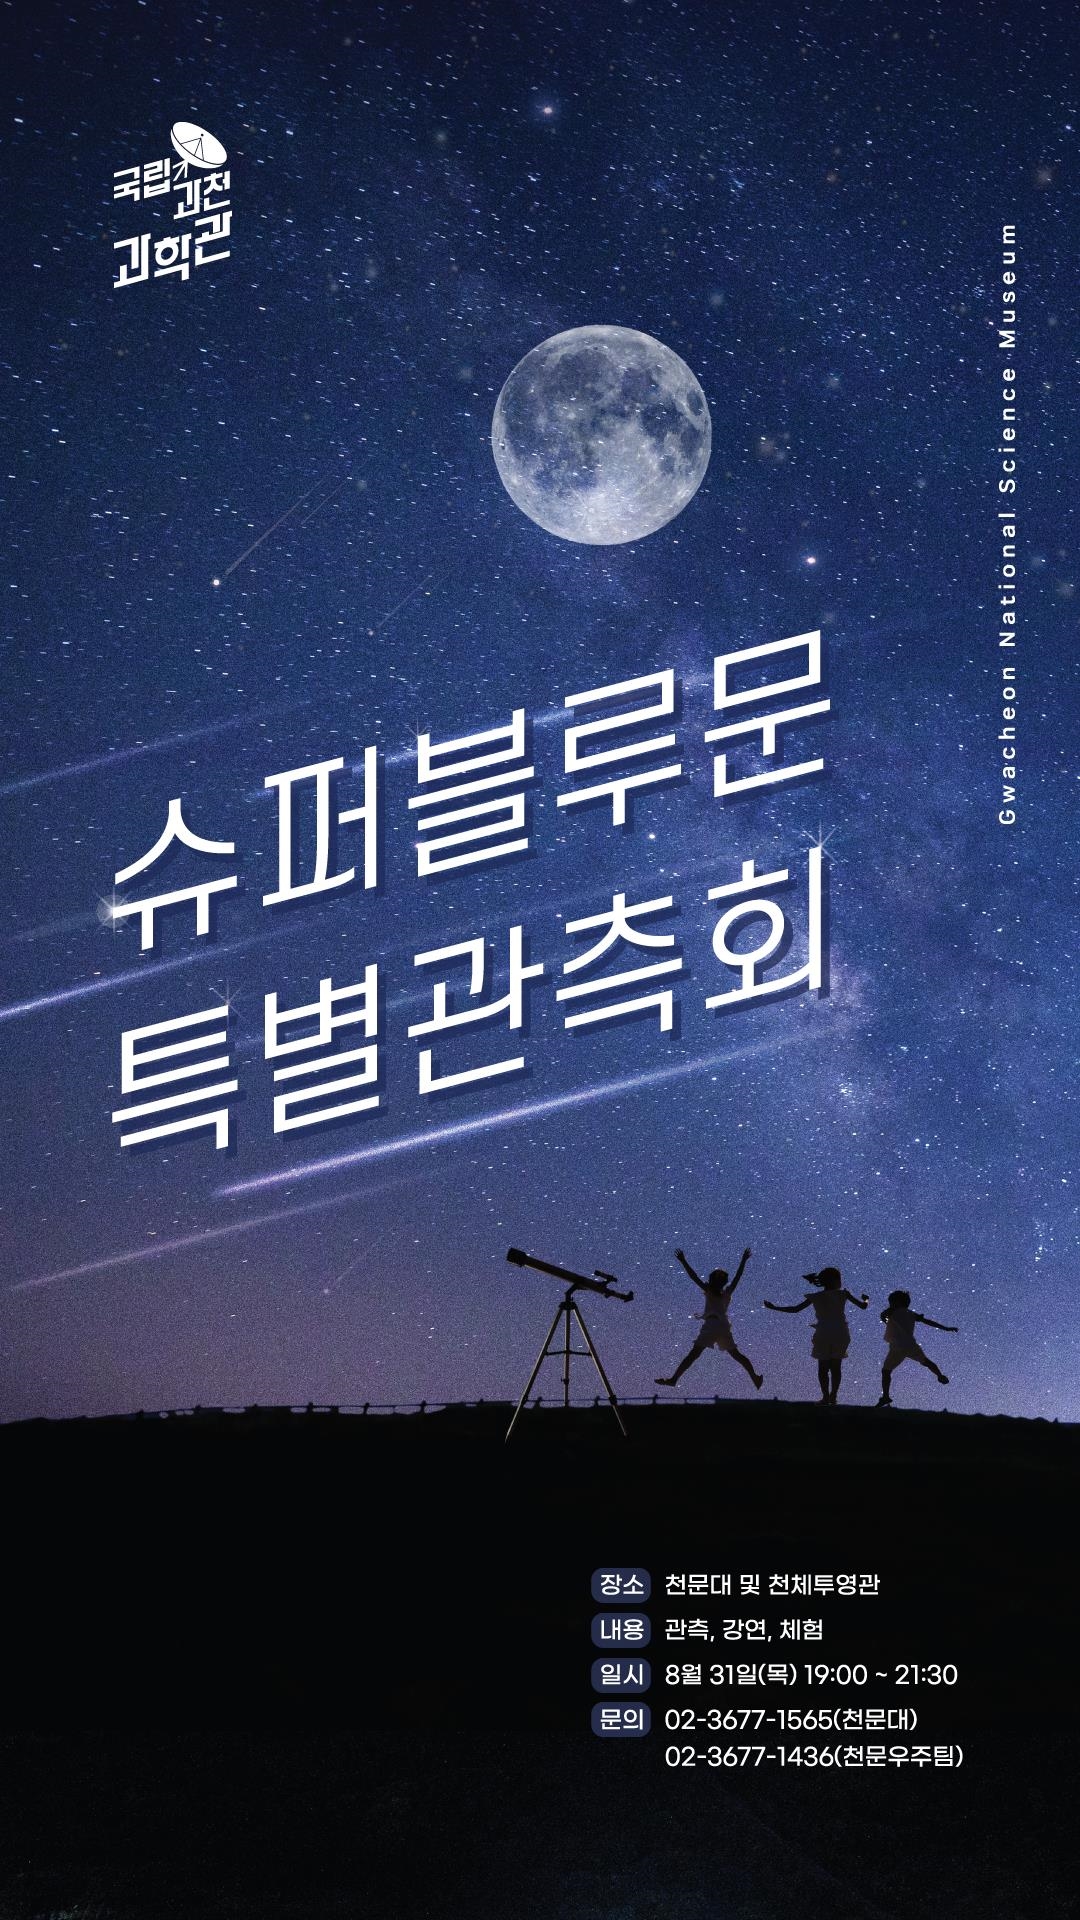 국립과천과학관이 5년 만에 찾아온 슈퍼블루문 특별관측회를 오는 31일에 개최한다. 사진은 관련 포스터.